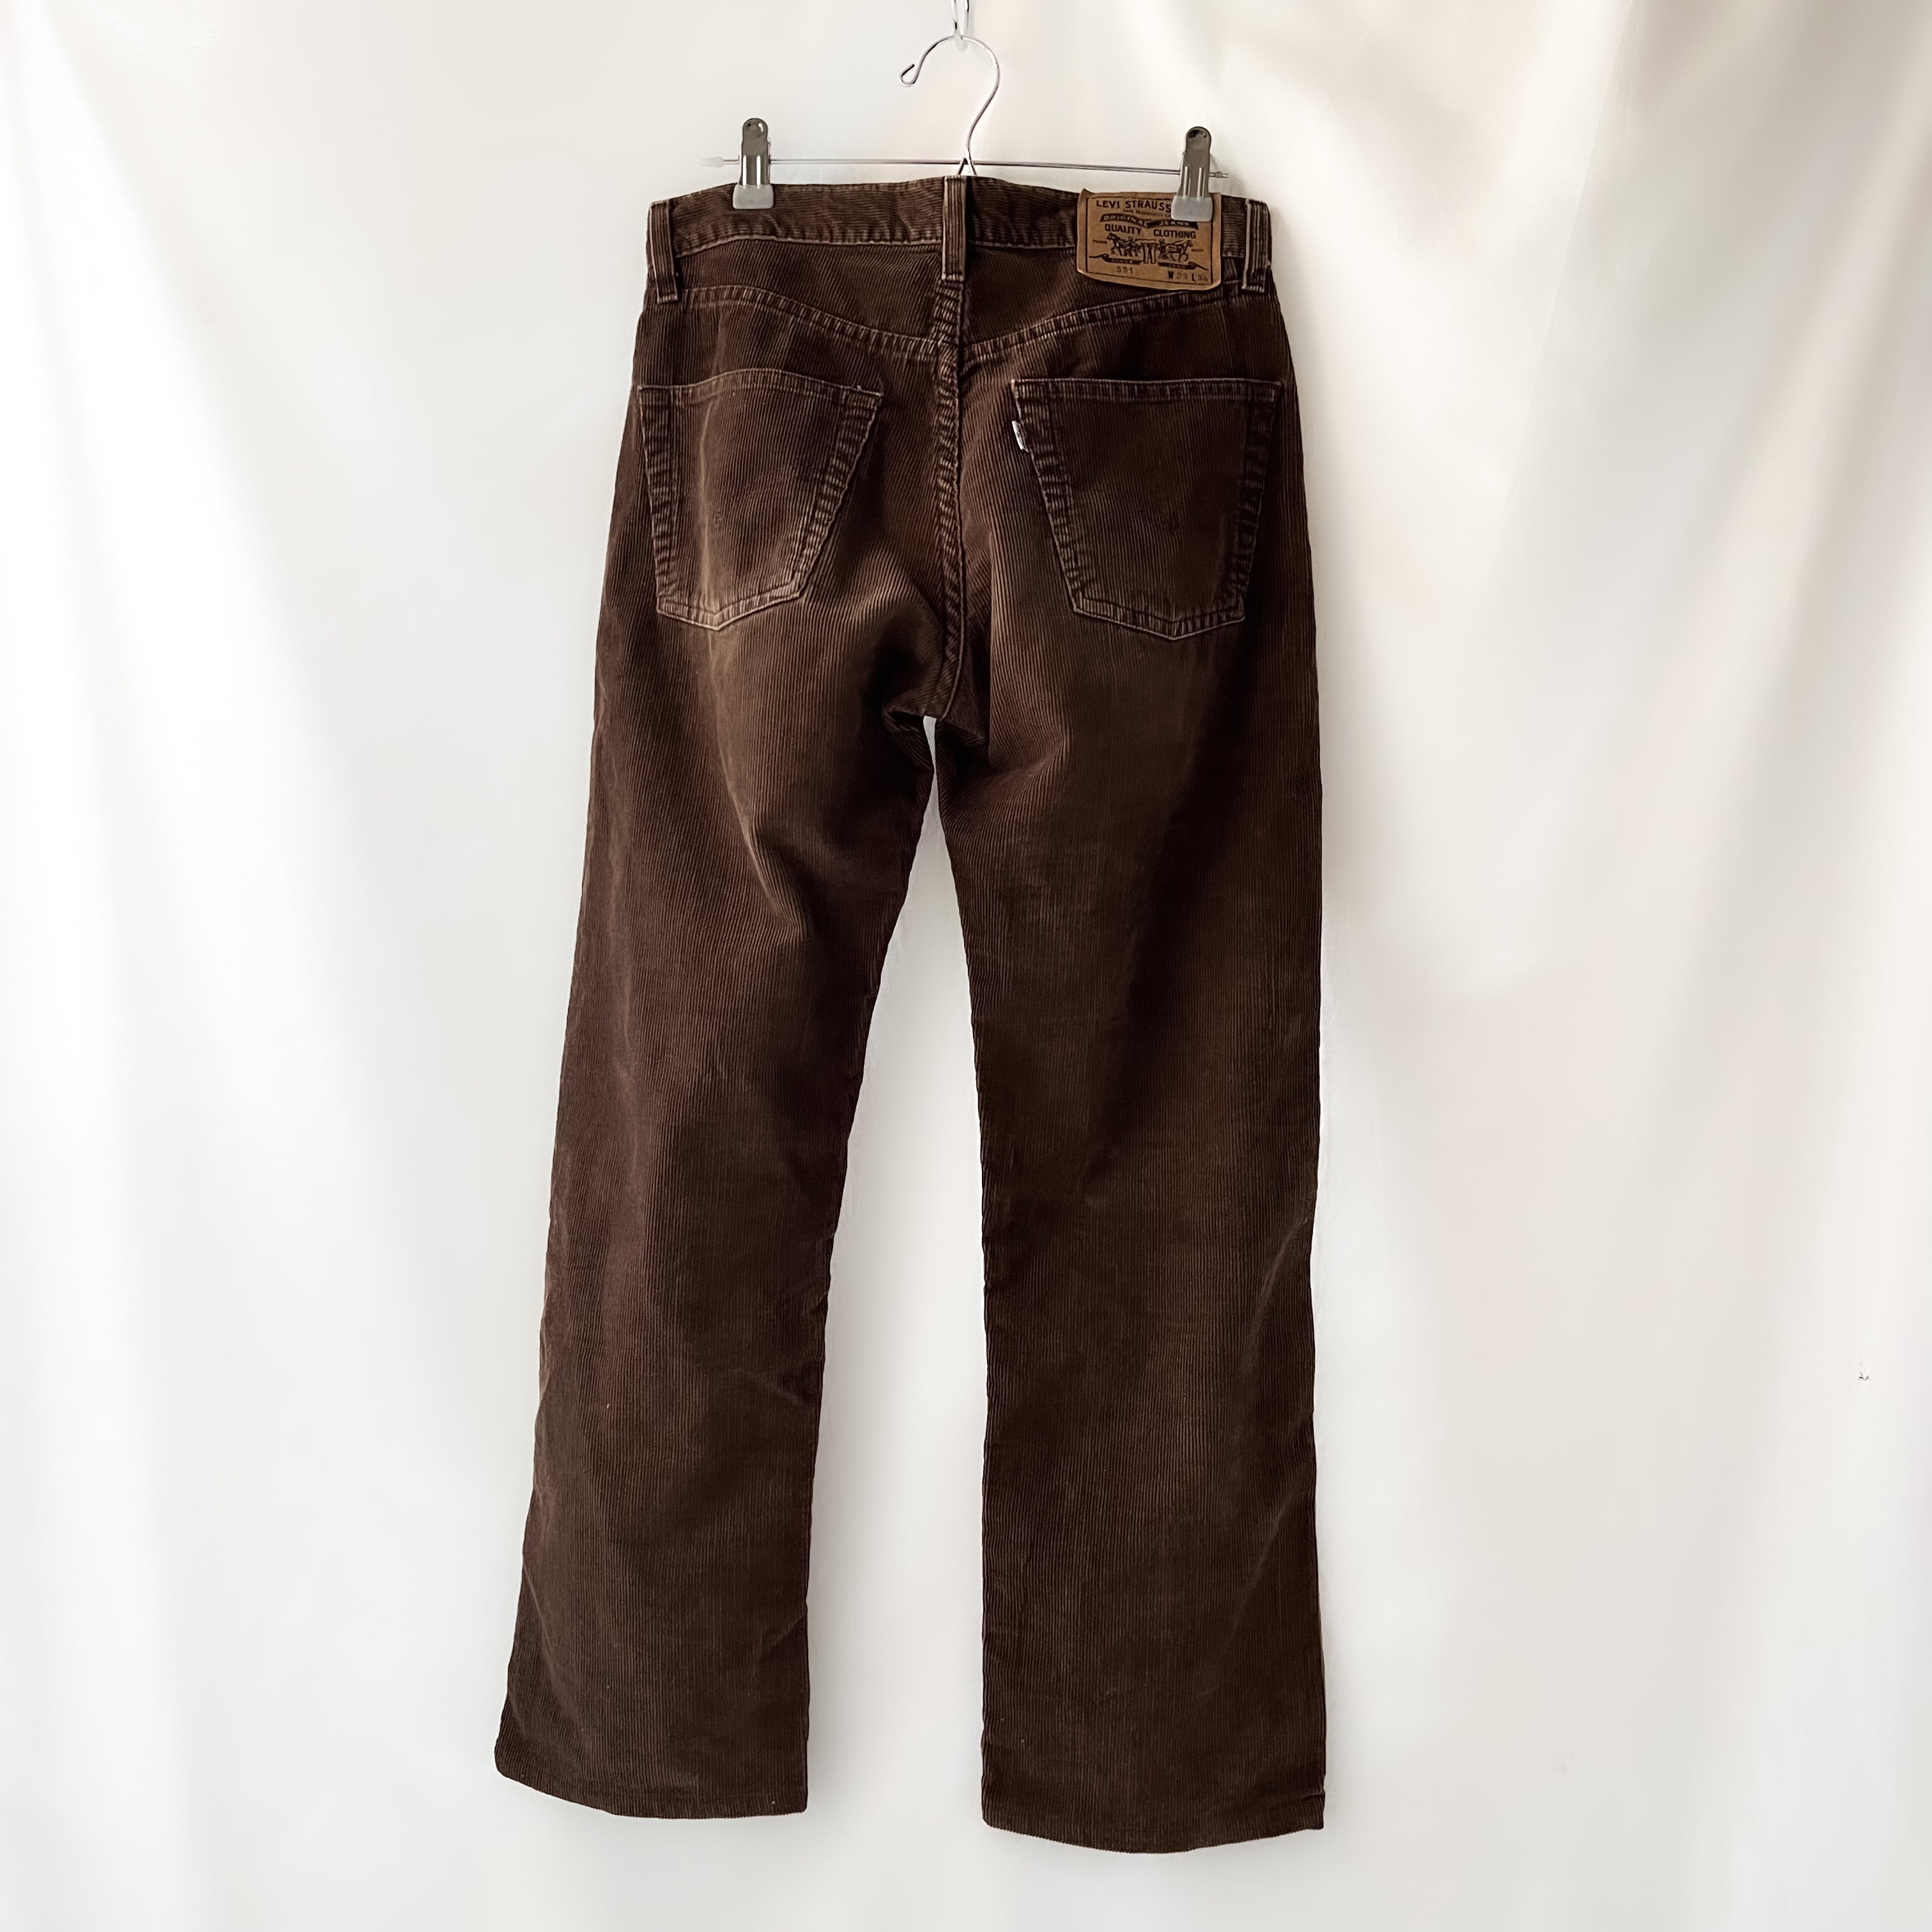 97年8月製造 levis 551 made in tunisia brown corduroy pants 90s 90 ...